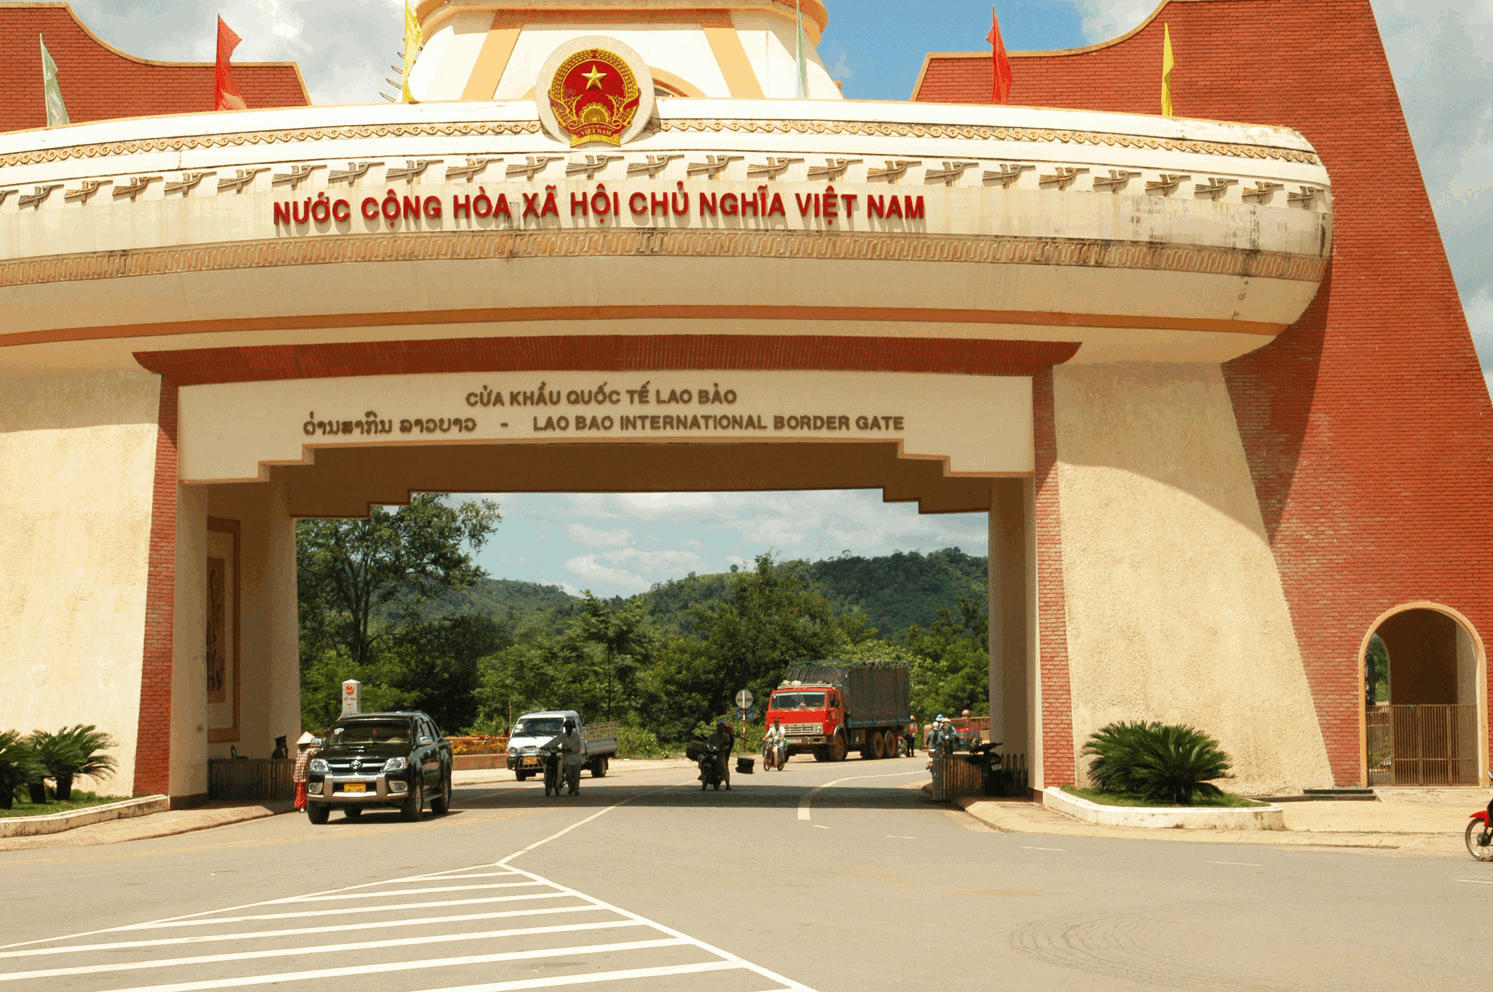 Cảm nhận về Lào sau hành trình 4 ngày 3 đêm - Vietmountain travel 2